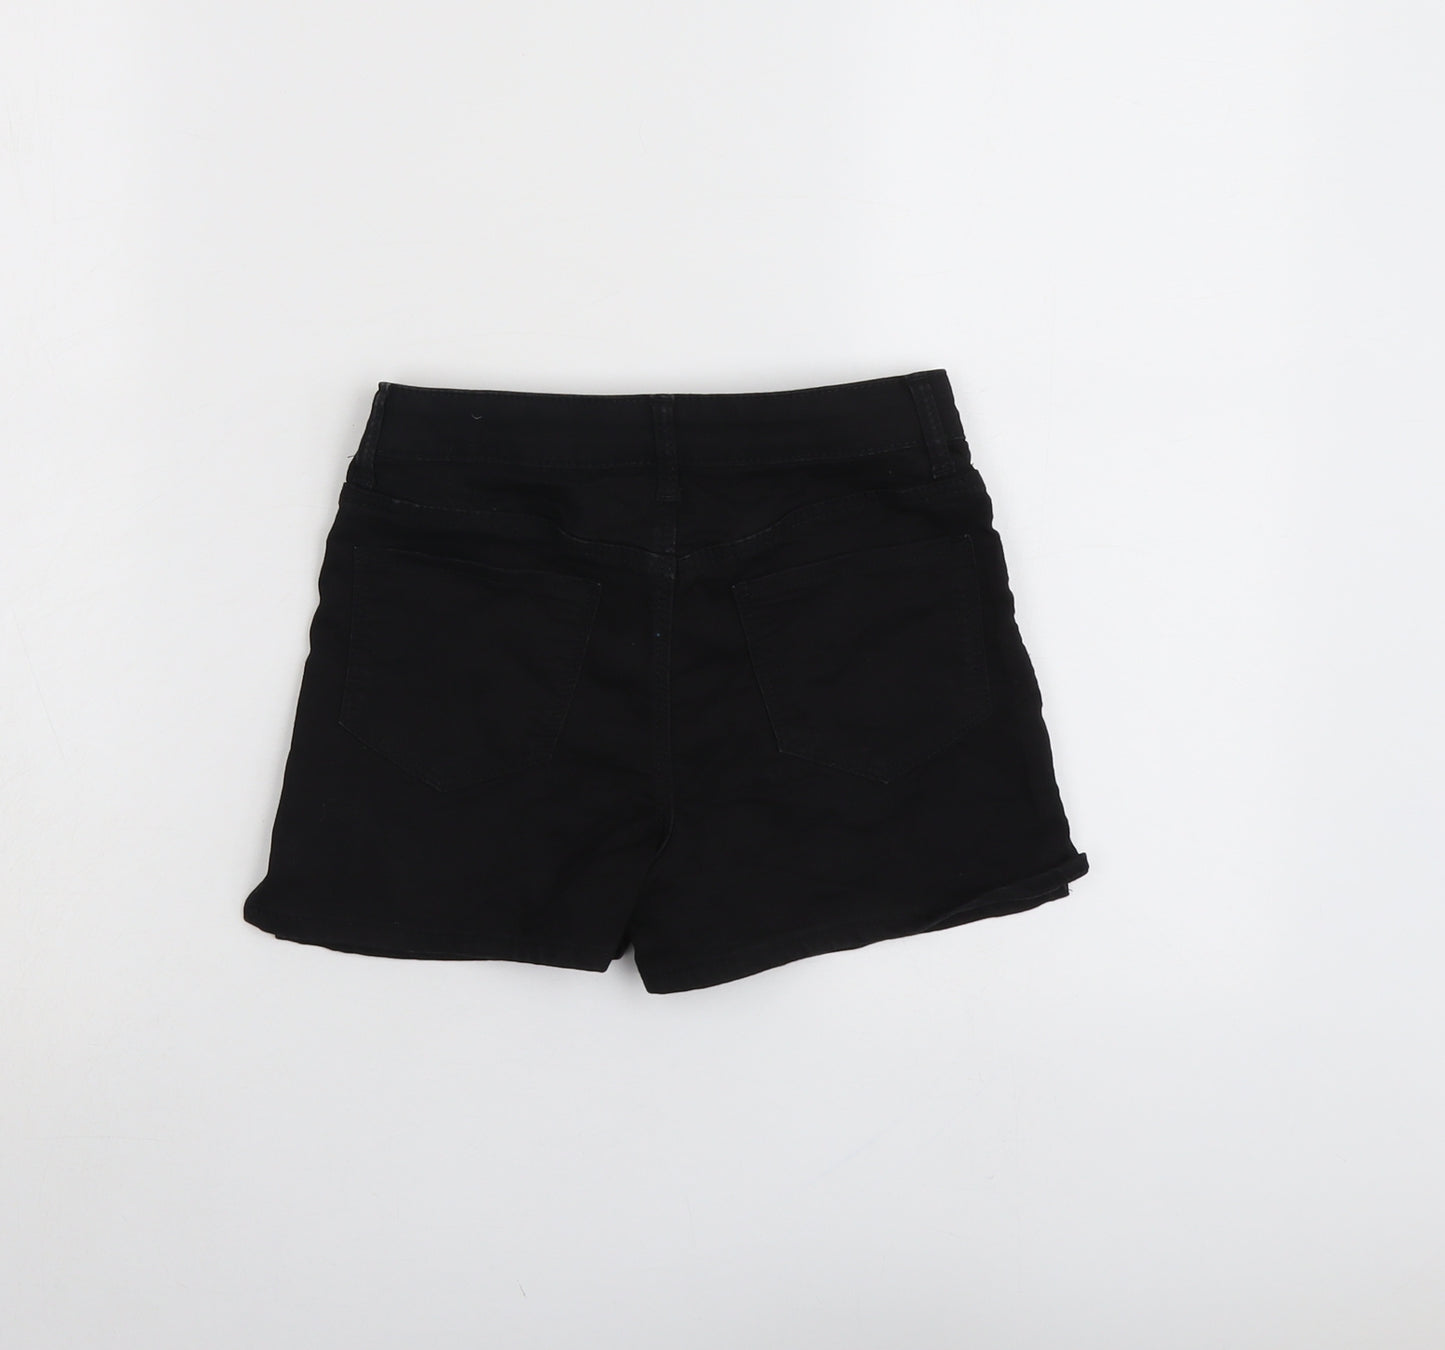 H&M Girls Black Cotton Boyfriend Shorts Size 9-10 Years Regular Zip